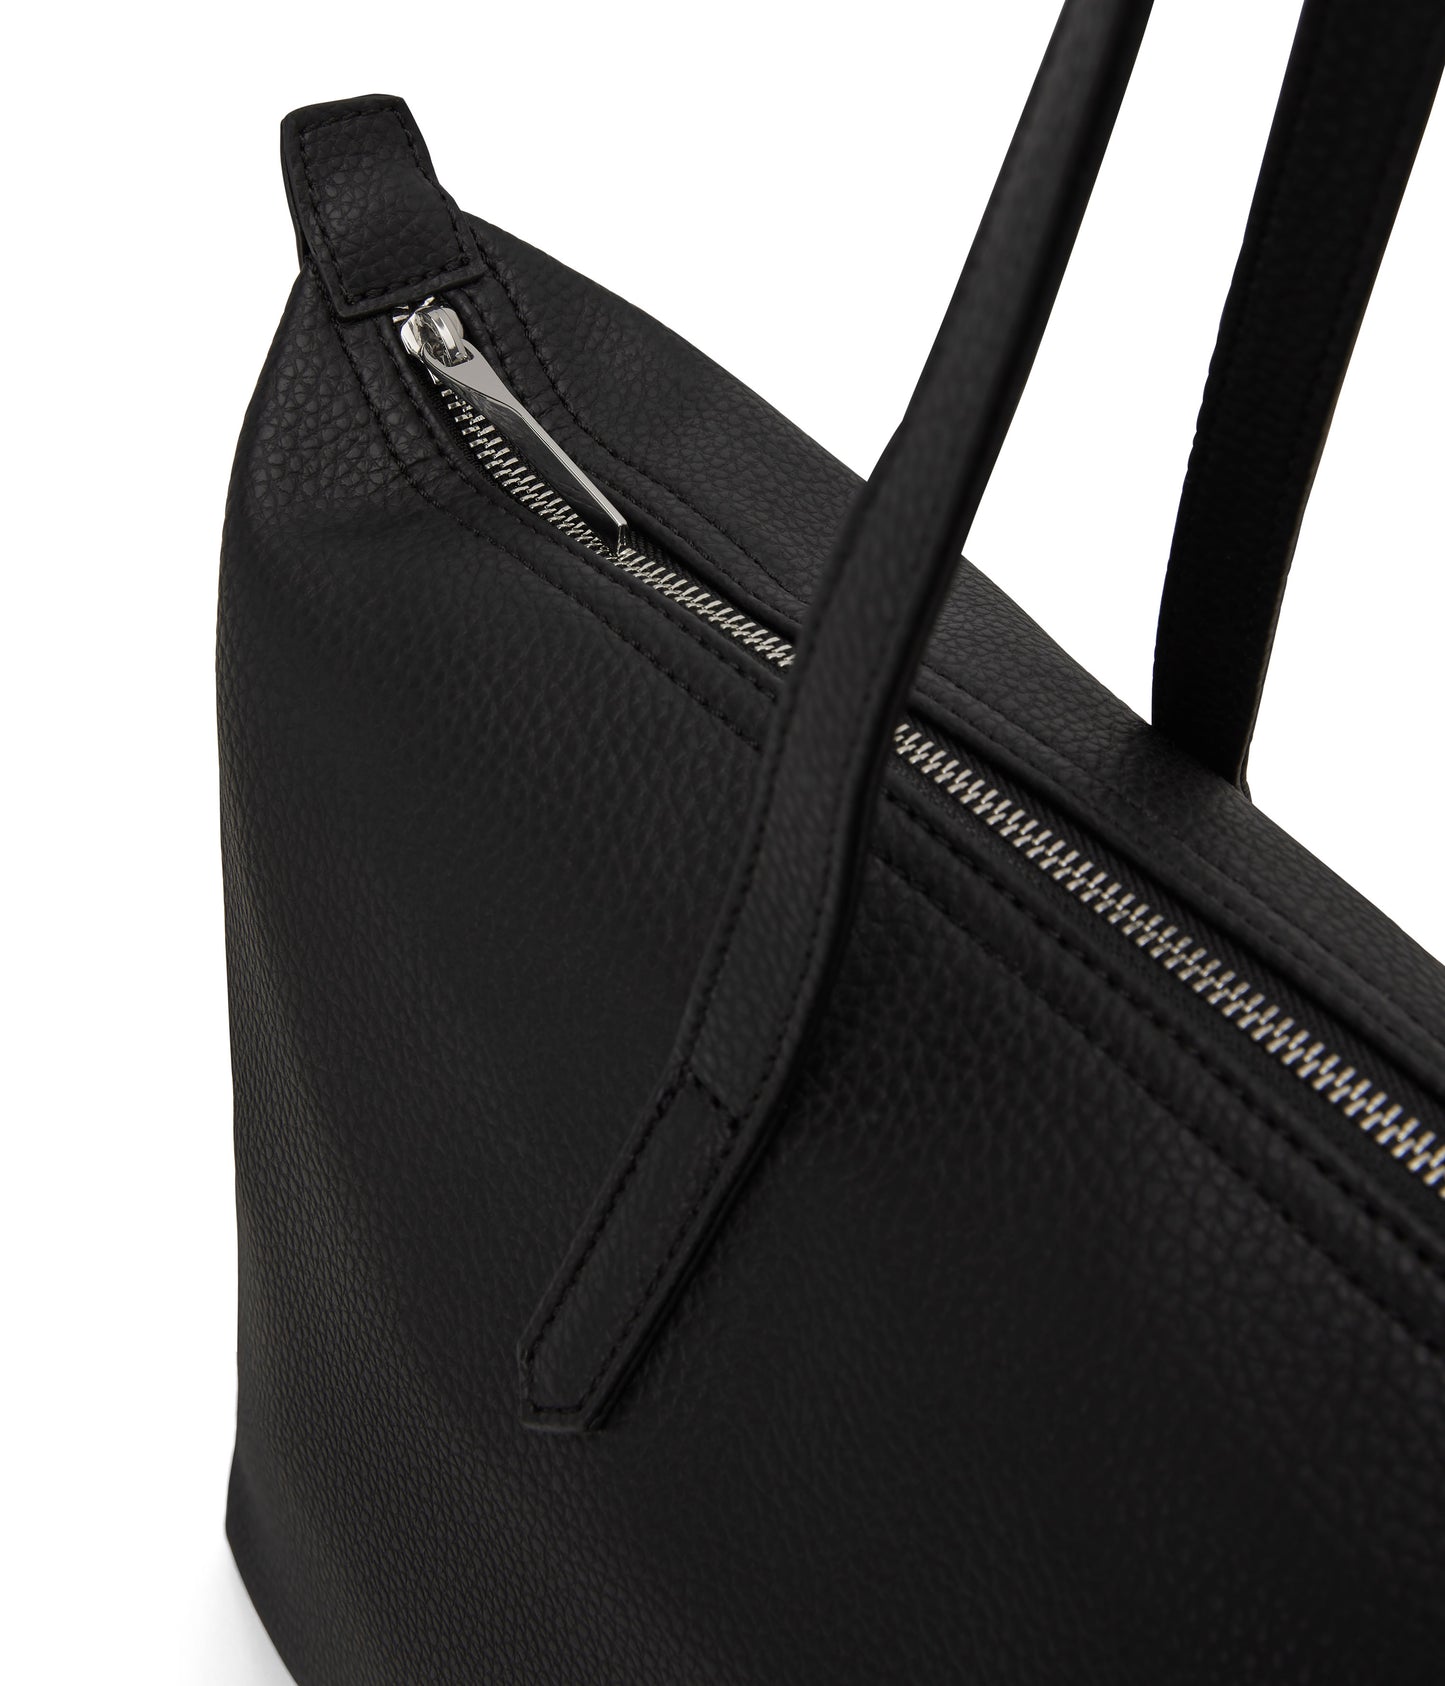 ABBI Vegan Tote Bag - Purity | Color: Black - variant::black